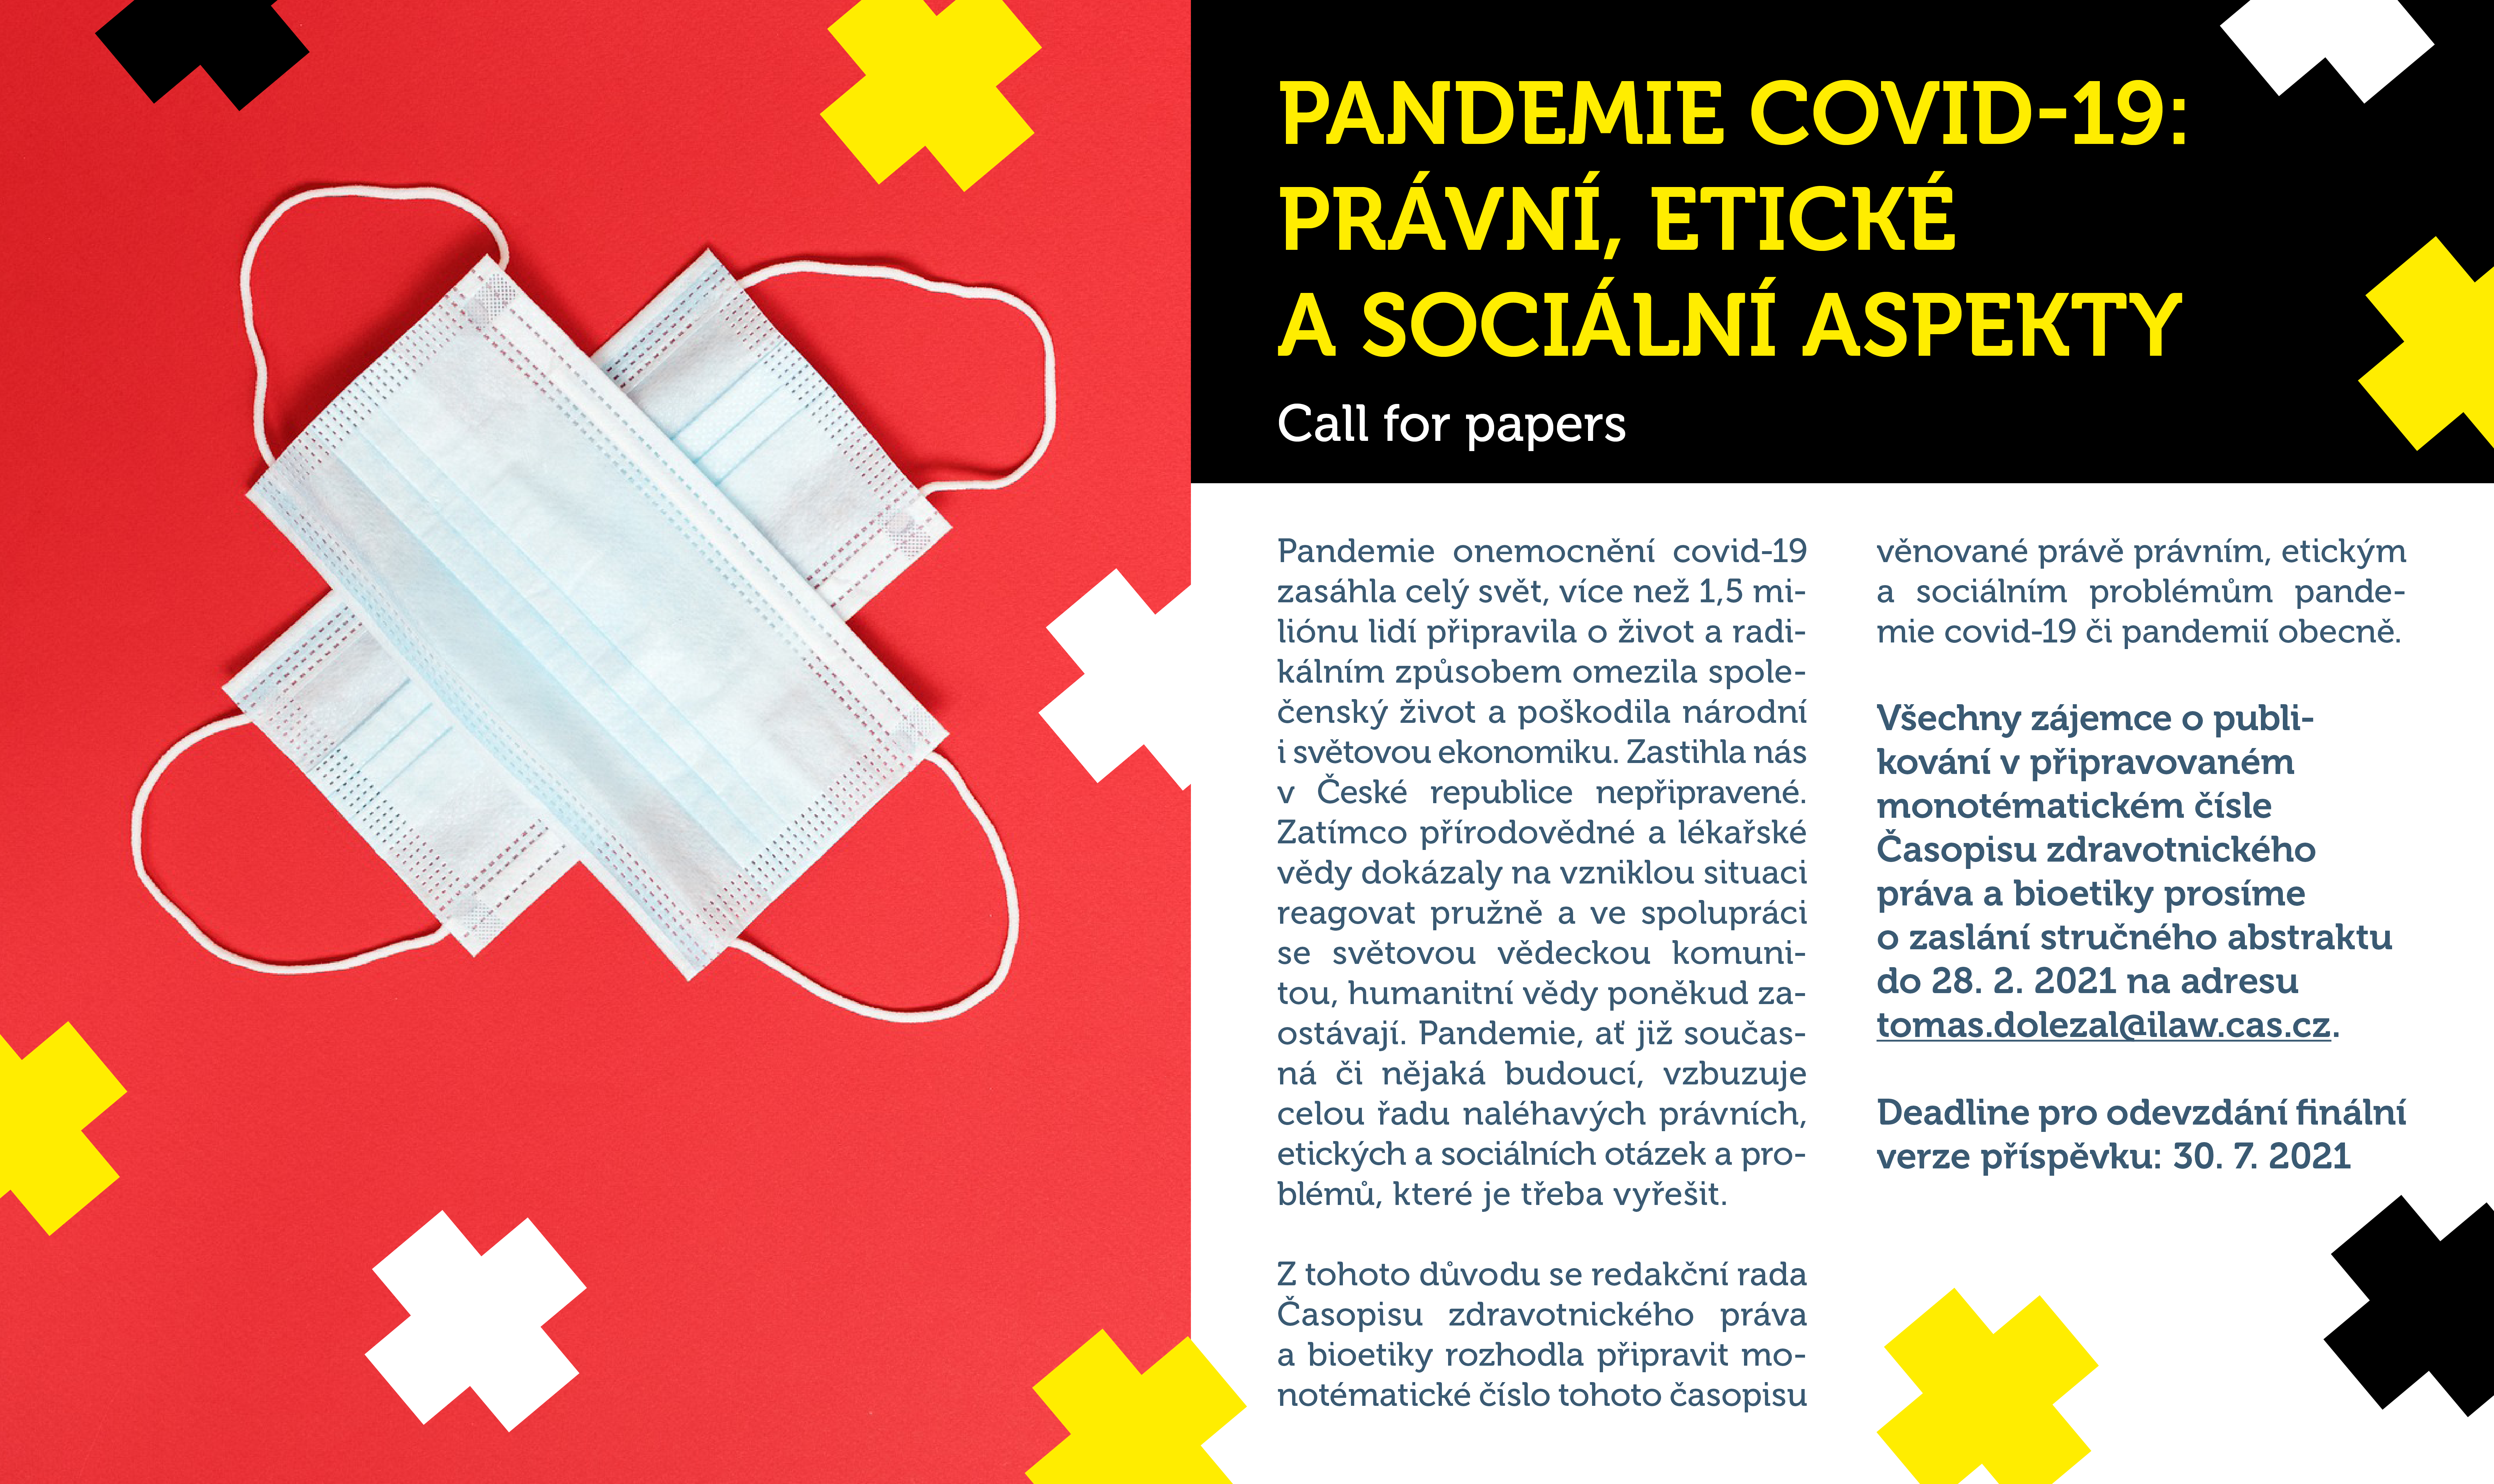 PANDEMIE COVID-19: PRÁVNÍ, ETICKÉ A SOCIÁLNÍ ASPEKTY